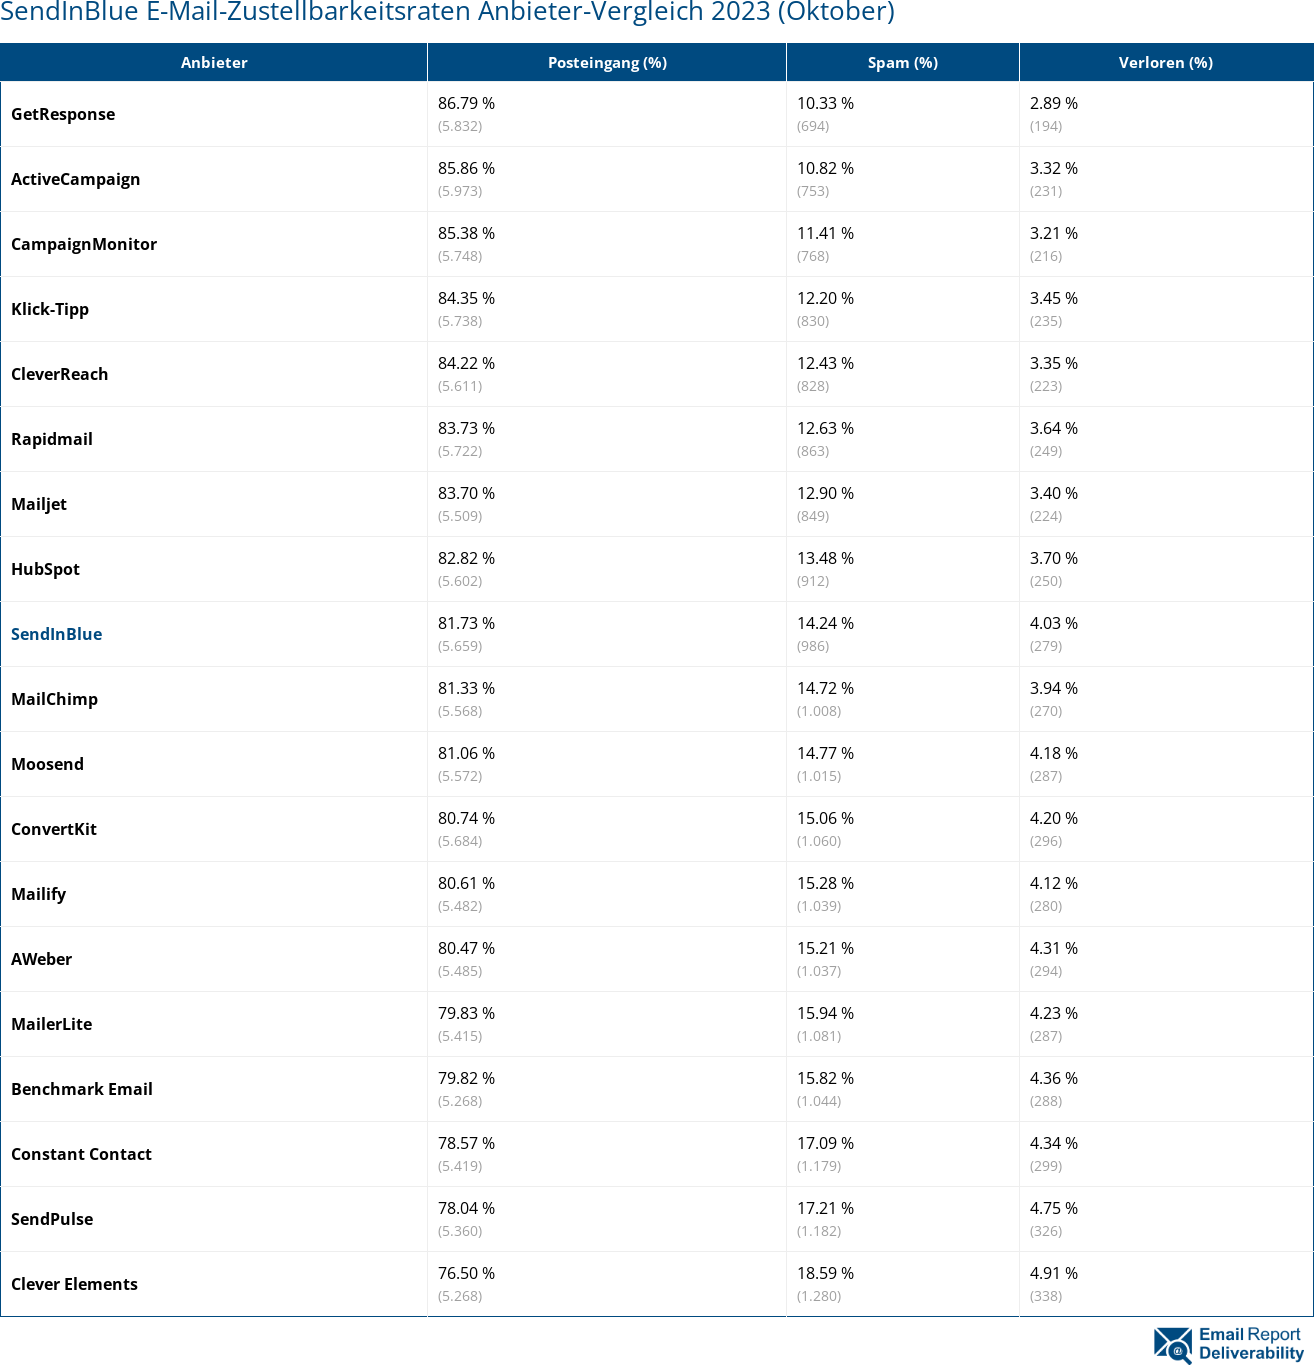 SendInBlue E-Mail-Zustellbarkeitsraten Anbieter-Vergleich 2023 (Oktober)